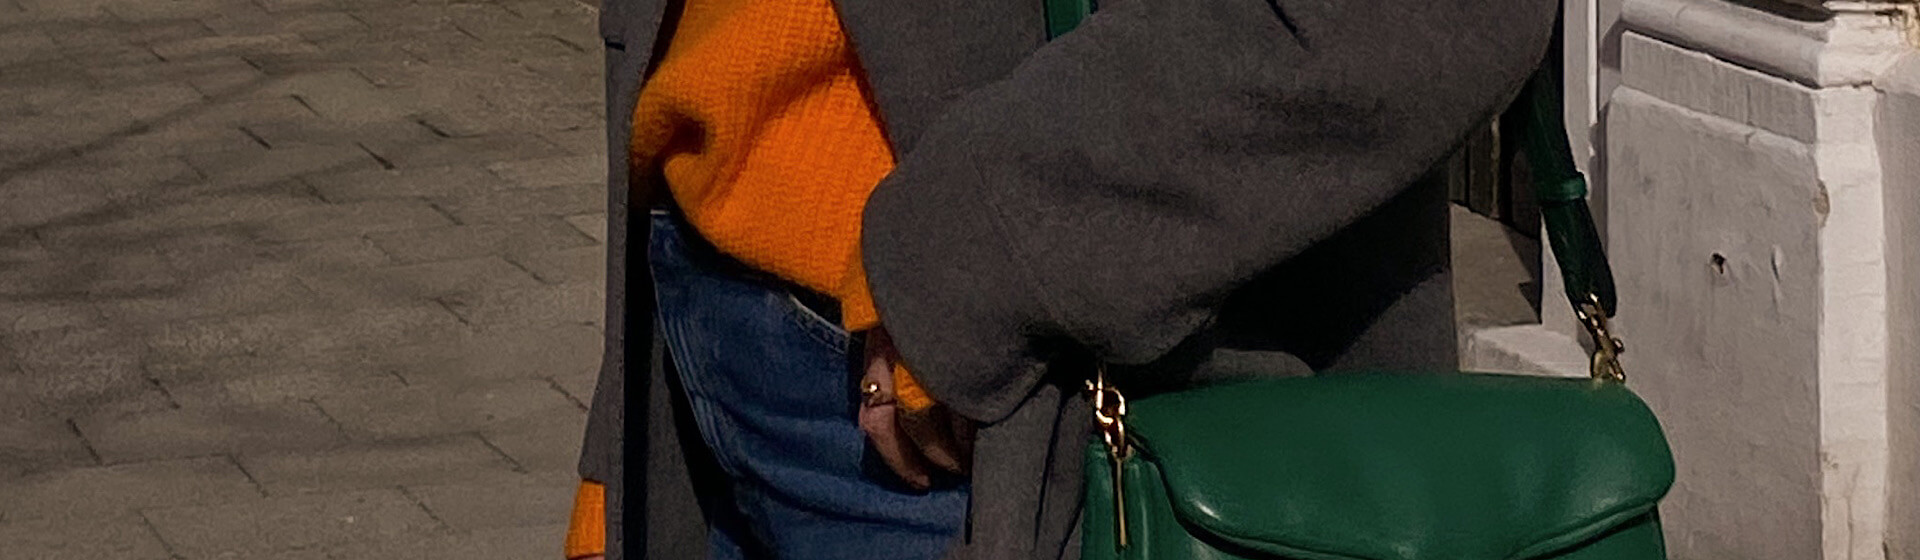 Shoelove Orange Header